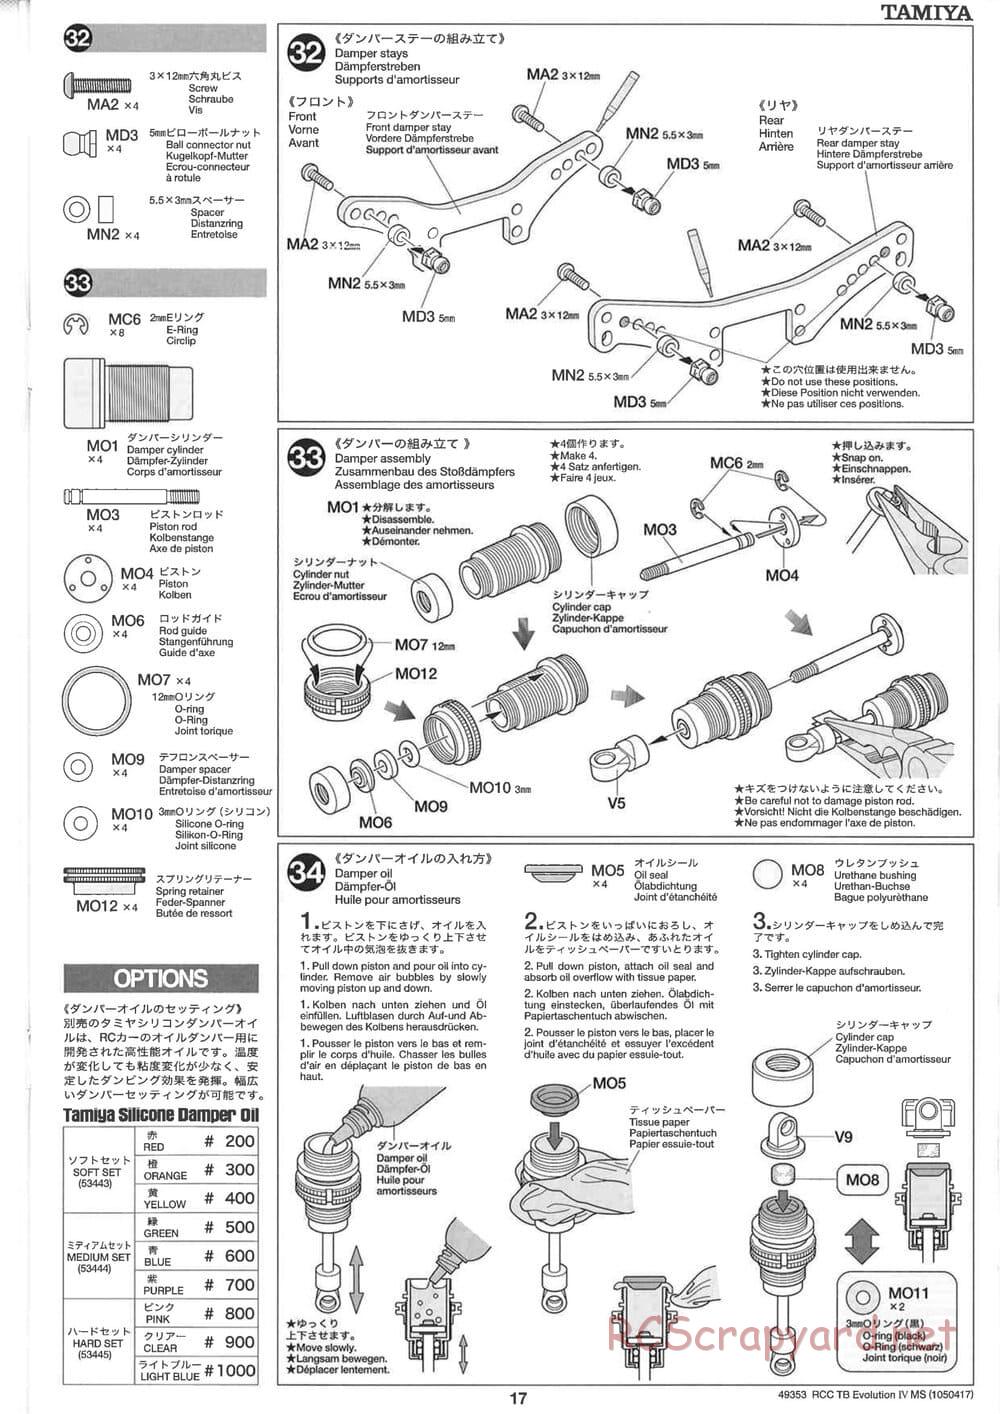 Tamiya - TB Evolution IV MS Chassis - Manual - Page 17